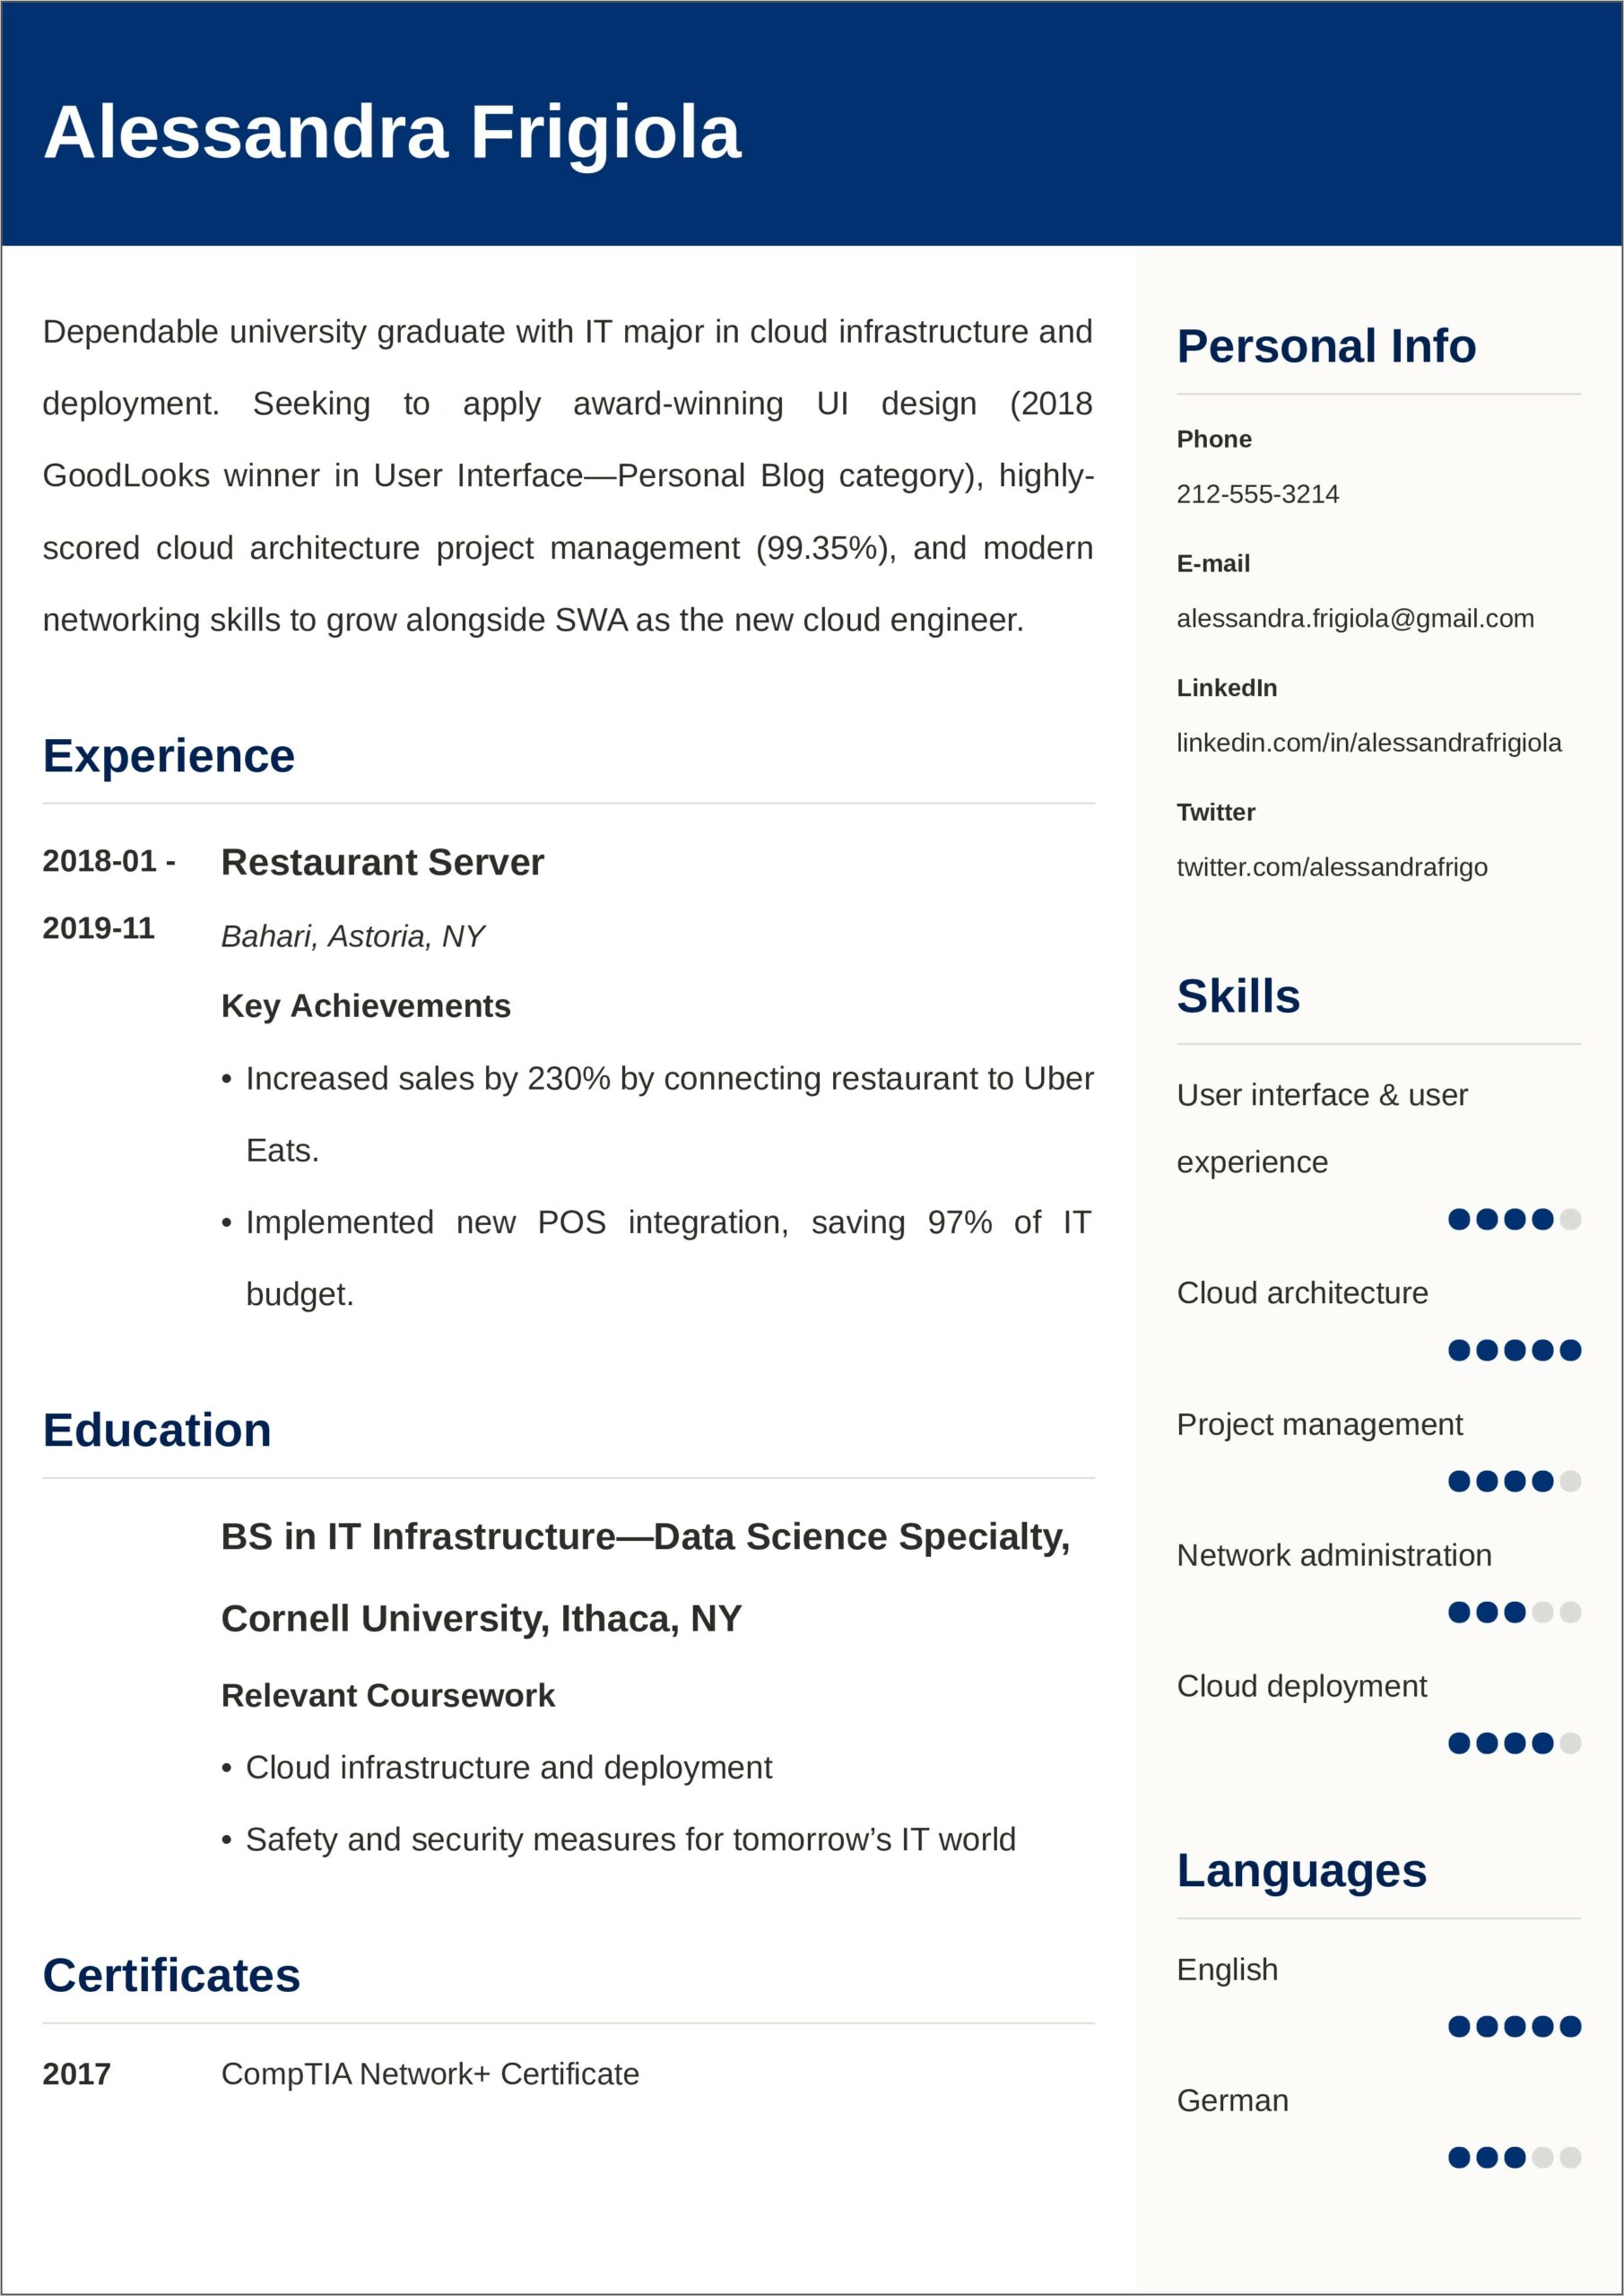 Sample Resume For Chemistry Internship